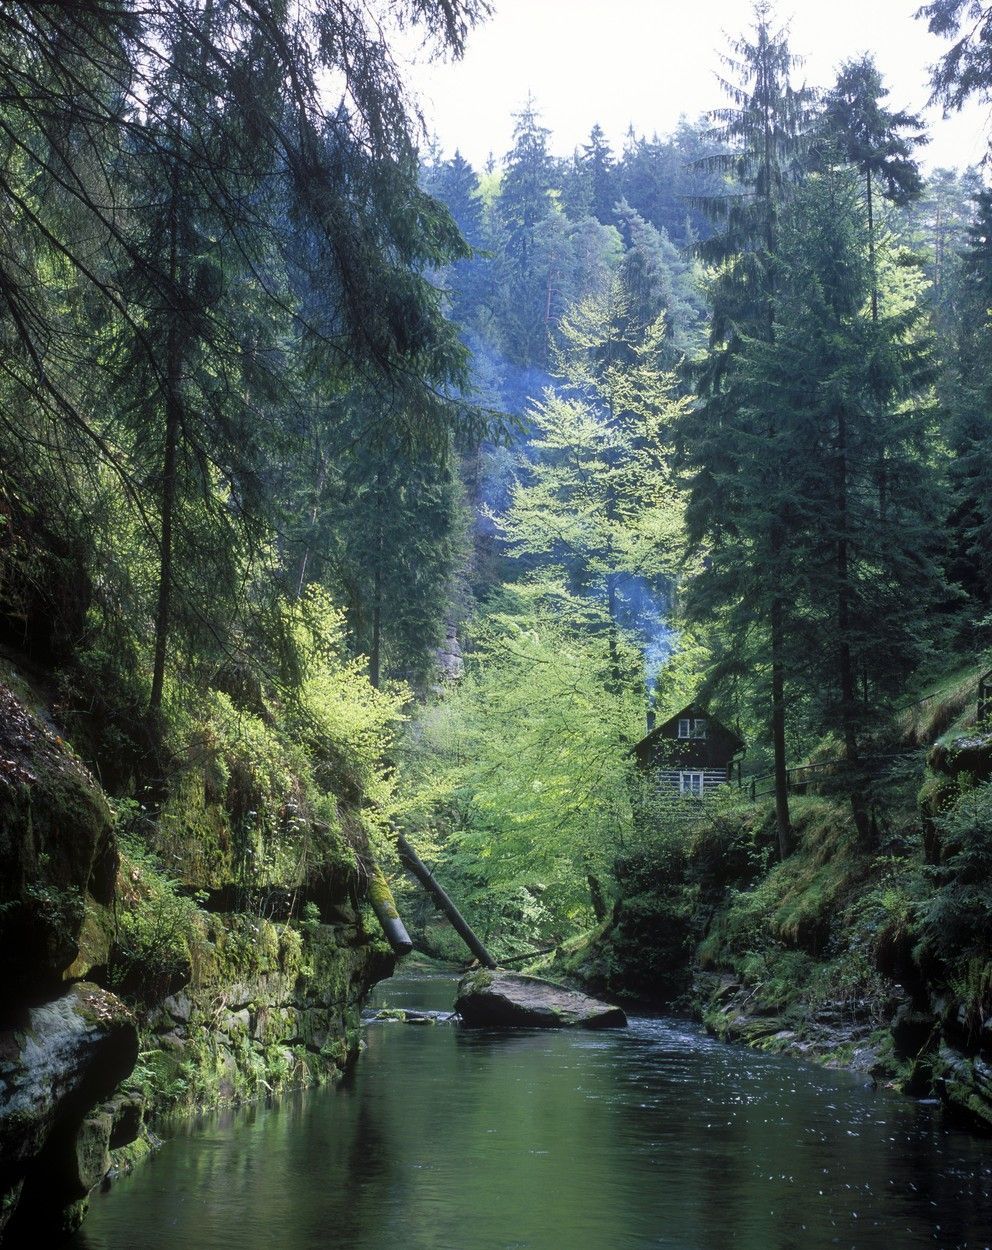 Národní park České Švýcarsko